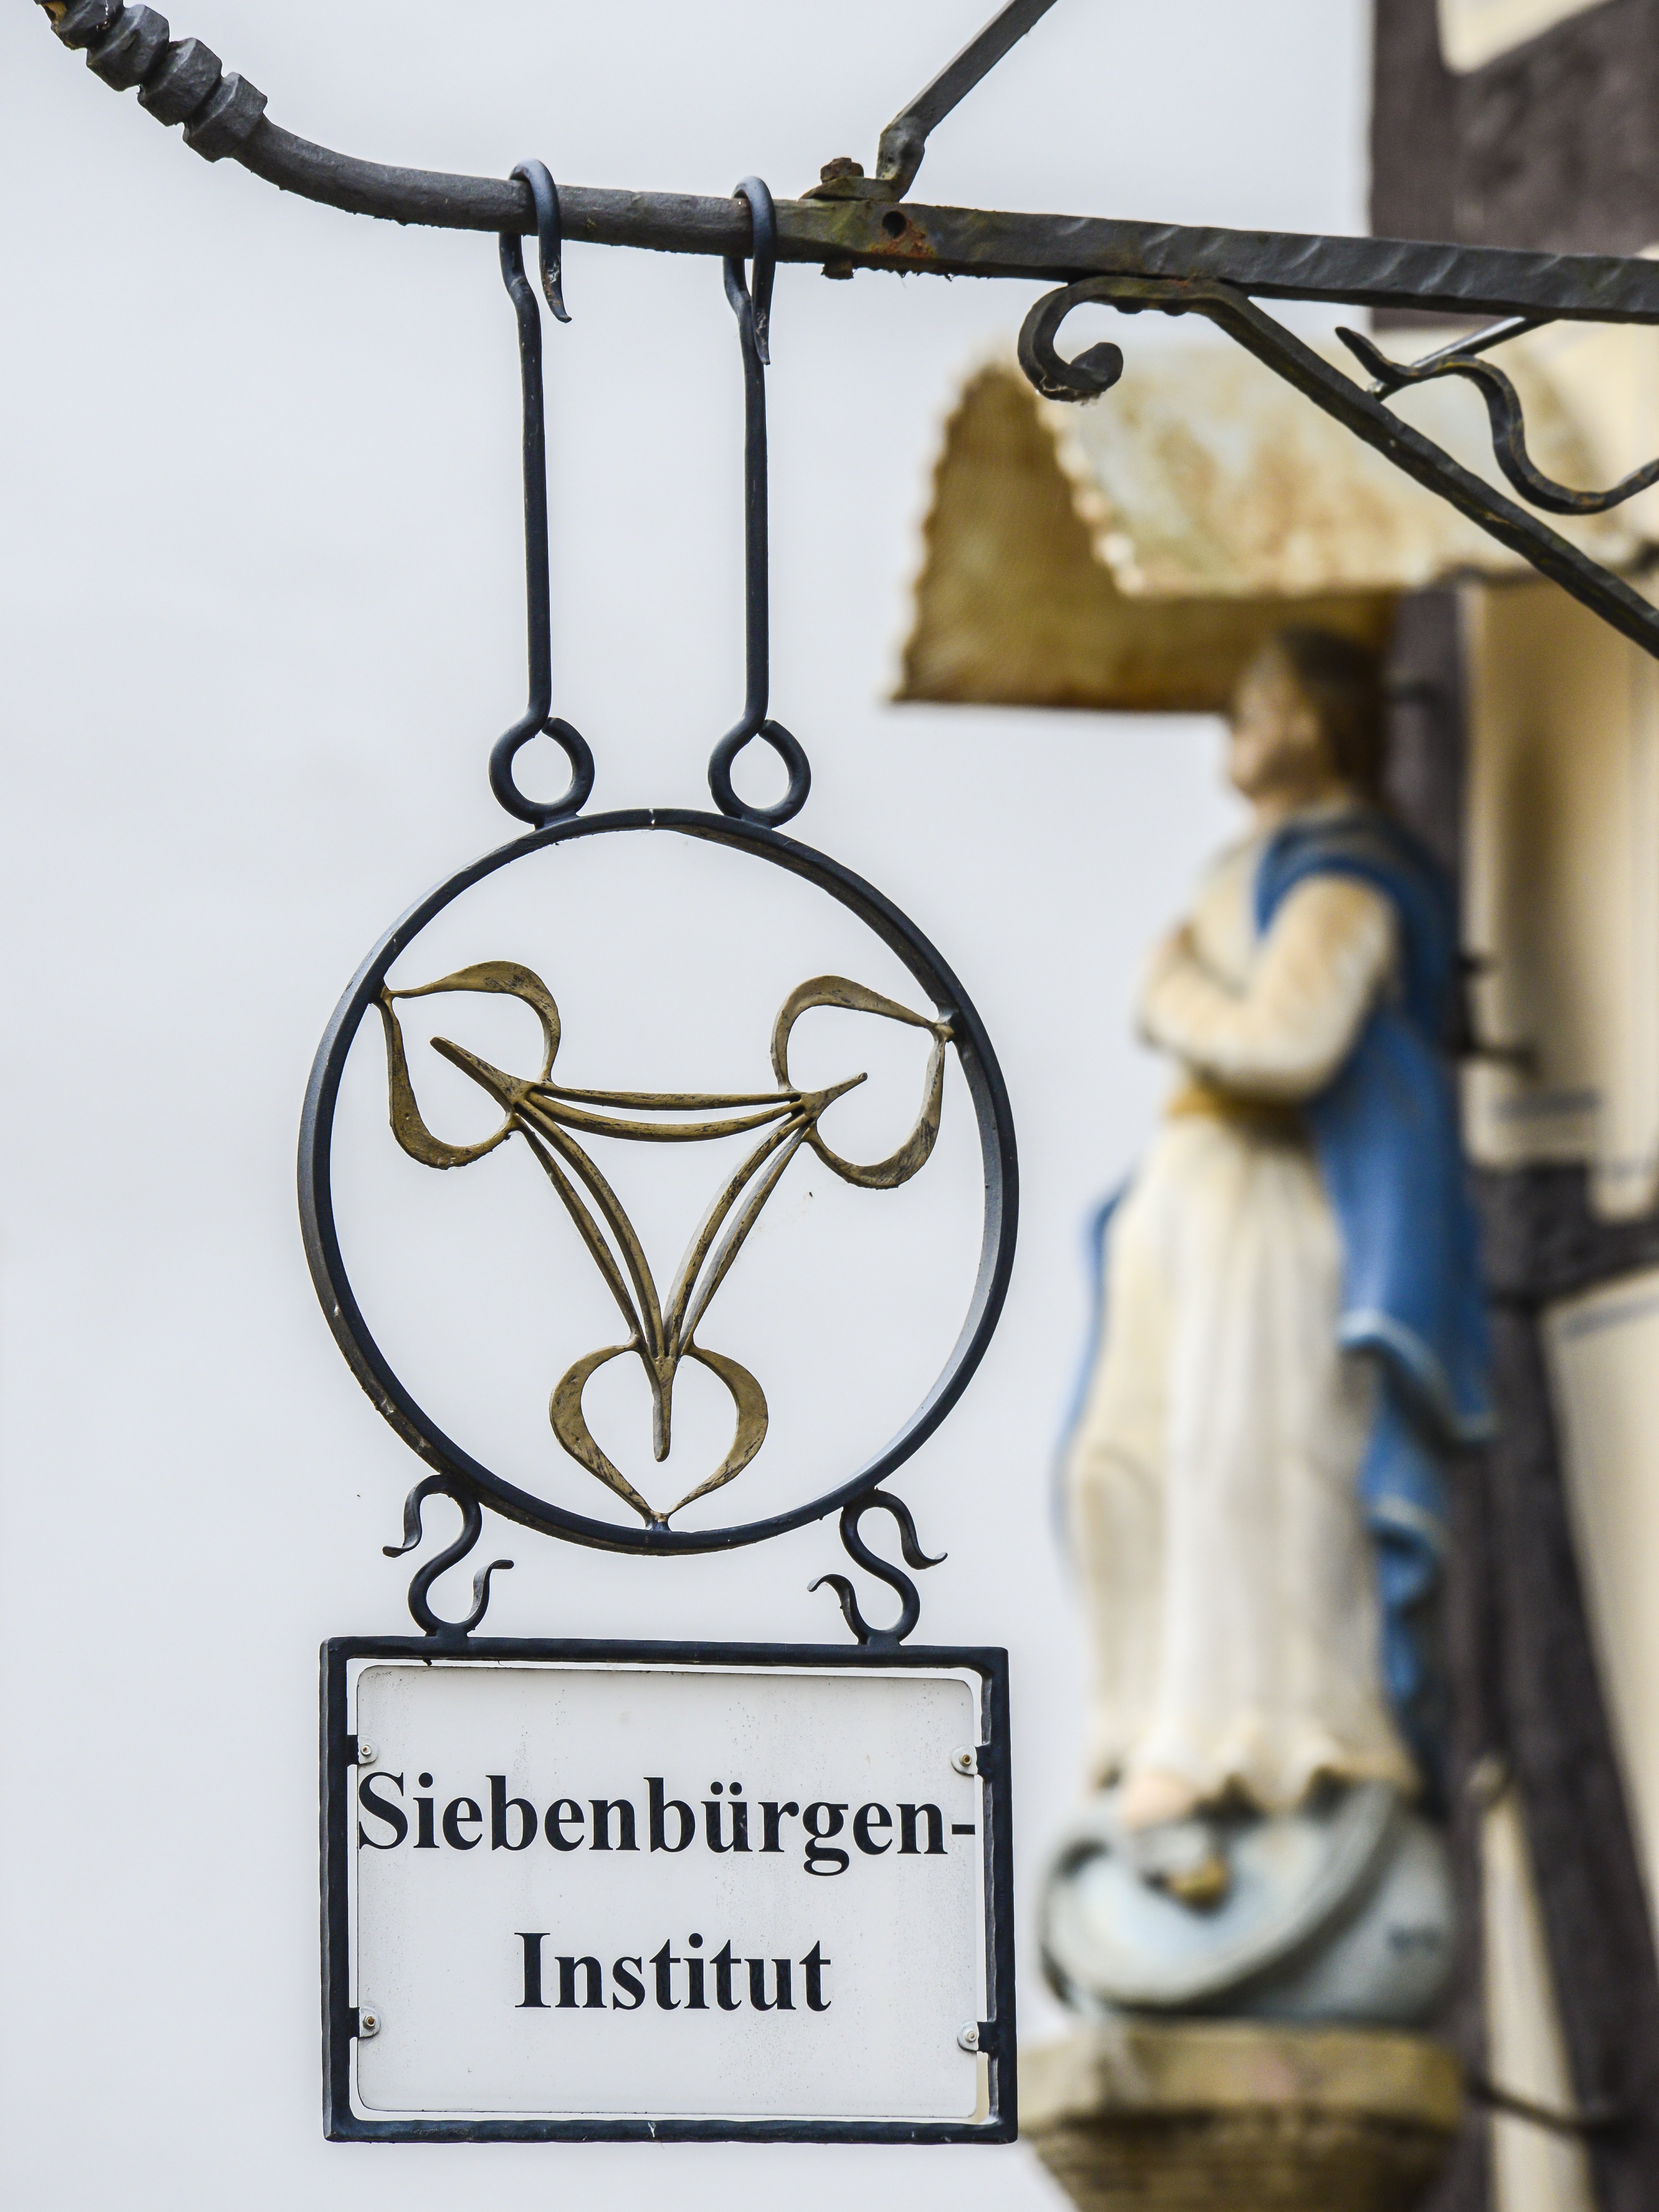 Siebenbürgen-Institut